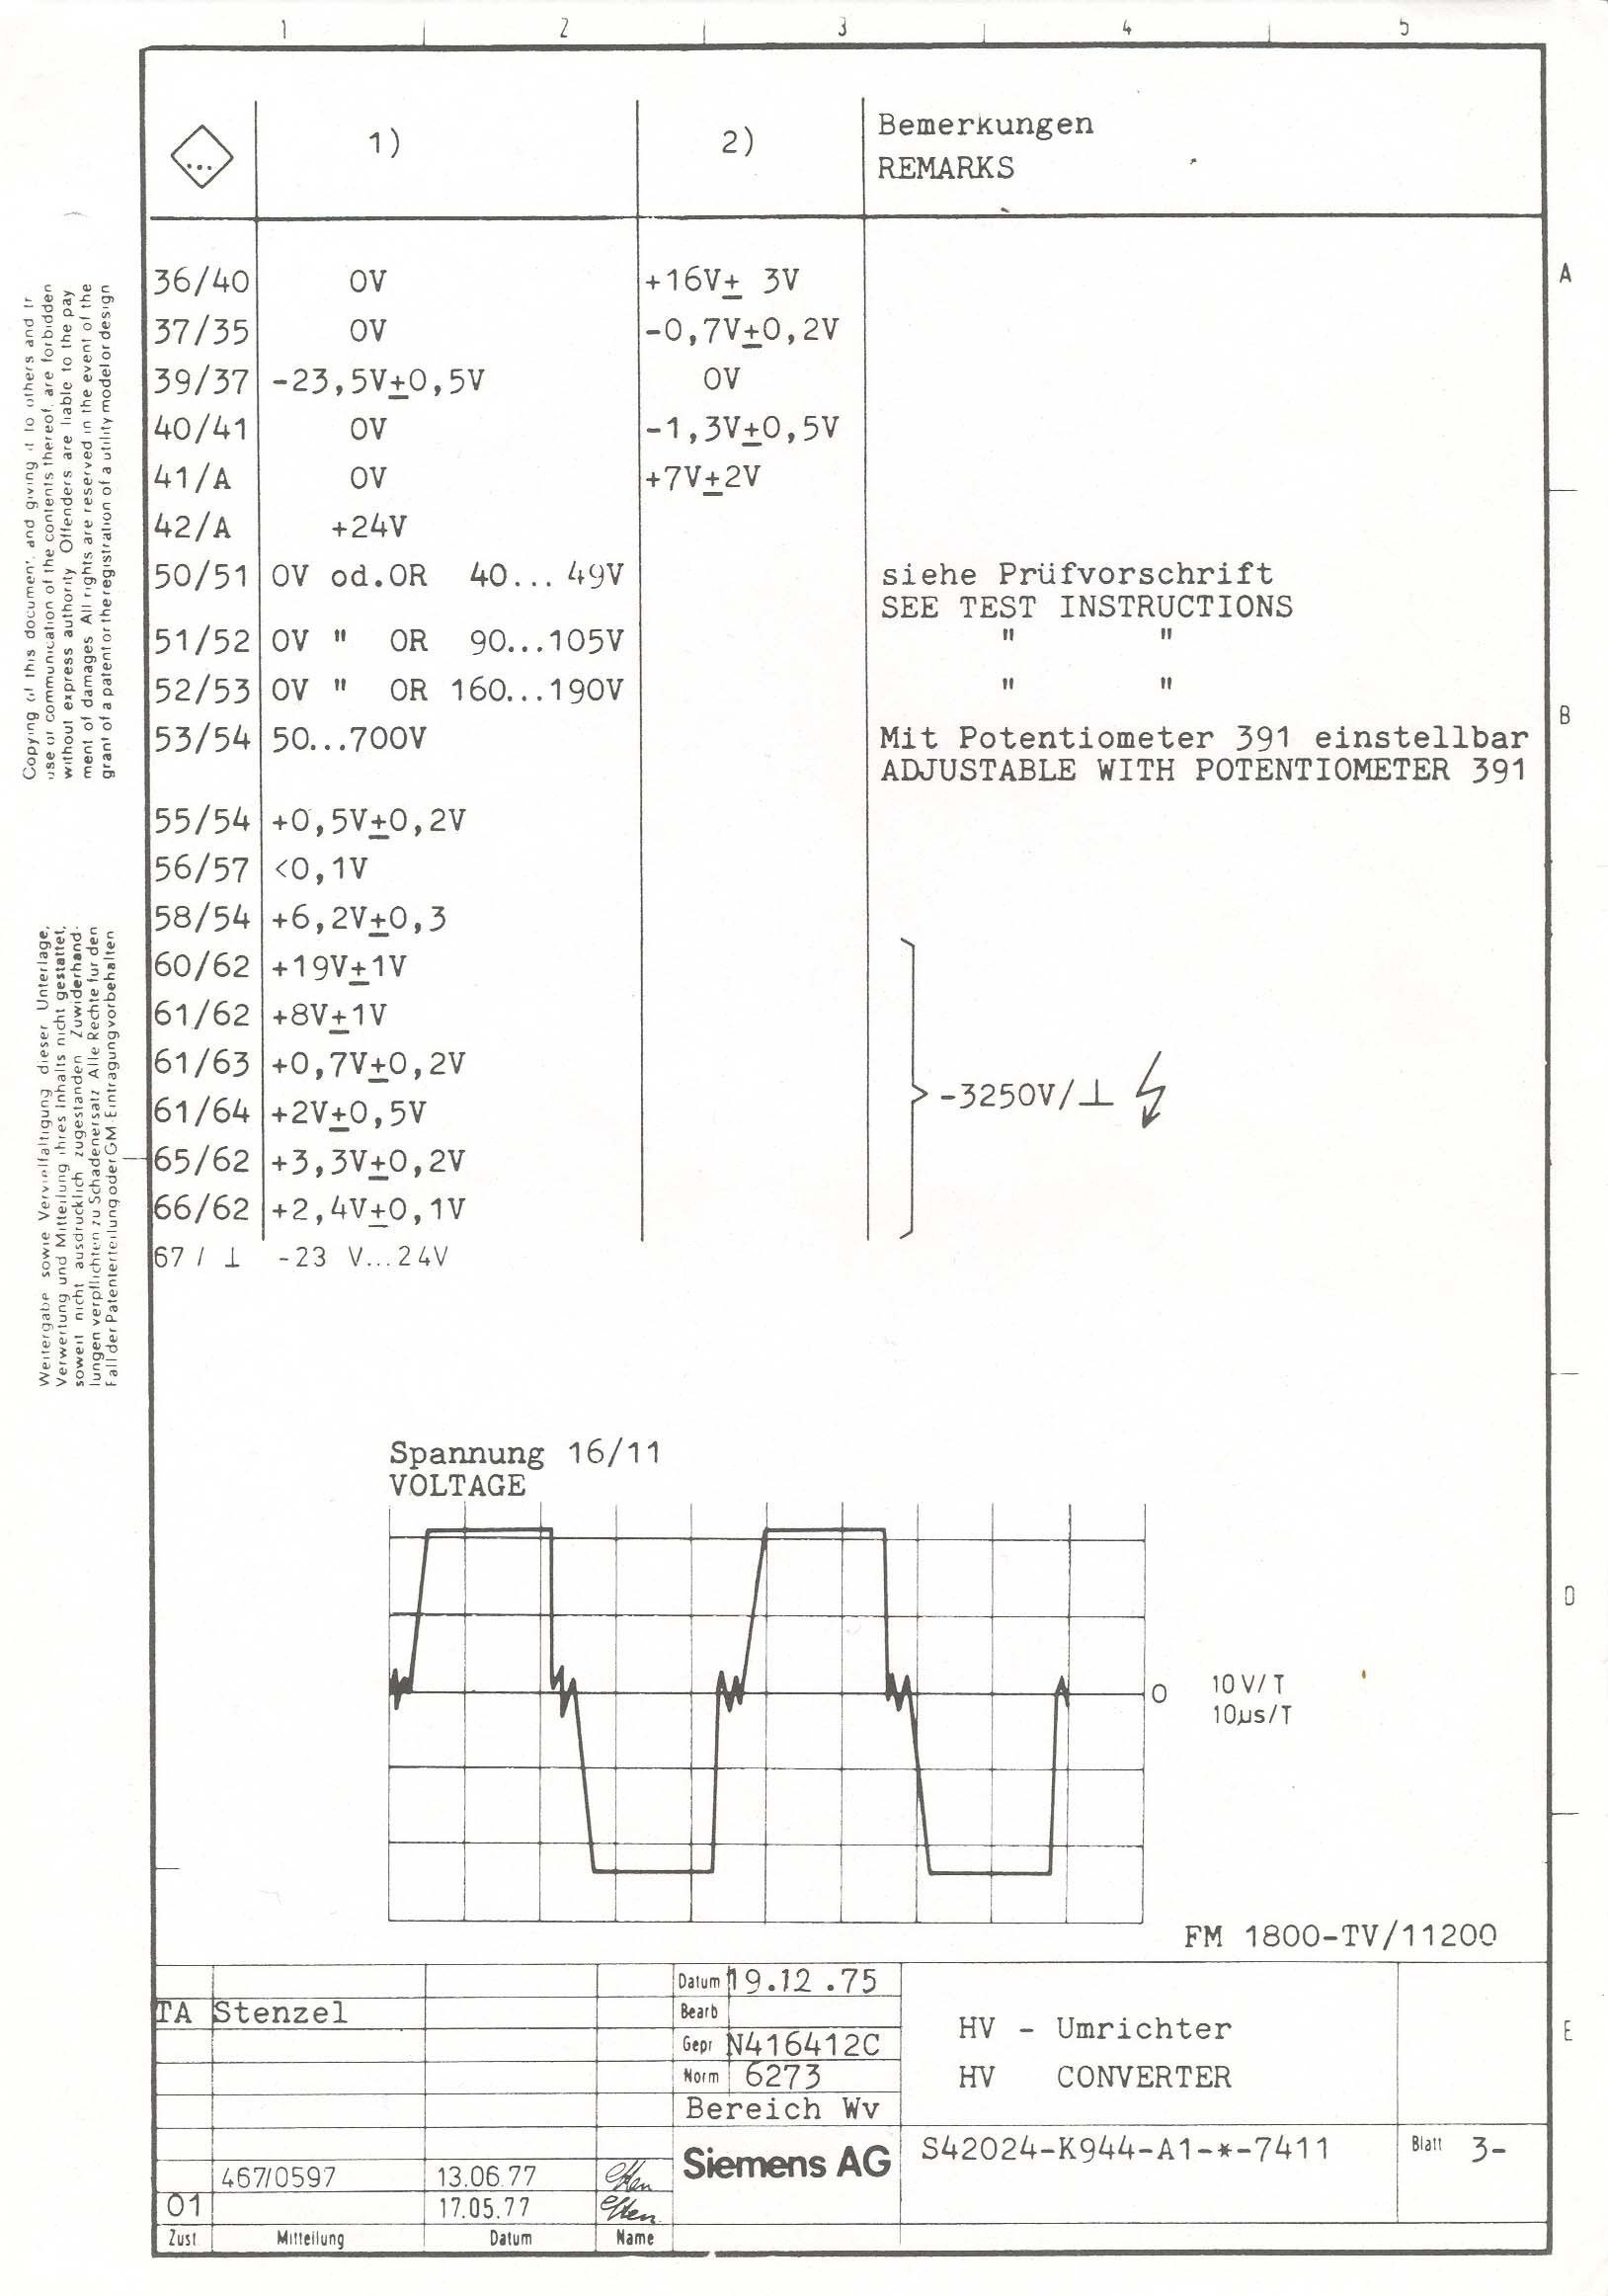 30 Amp Wiring Diagram Rate Wiring Diagram 13 Amp Plug Fresh 50 Amp Rv Wiring Diagram Unique